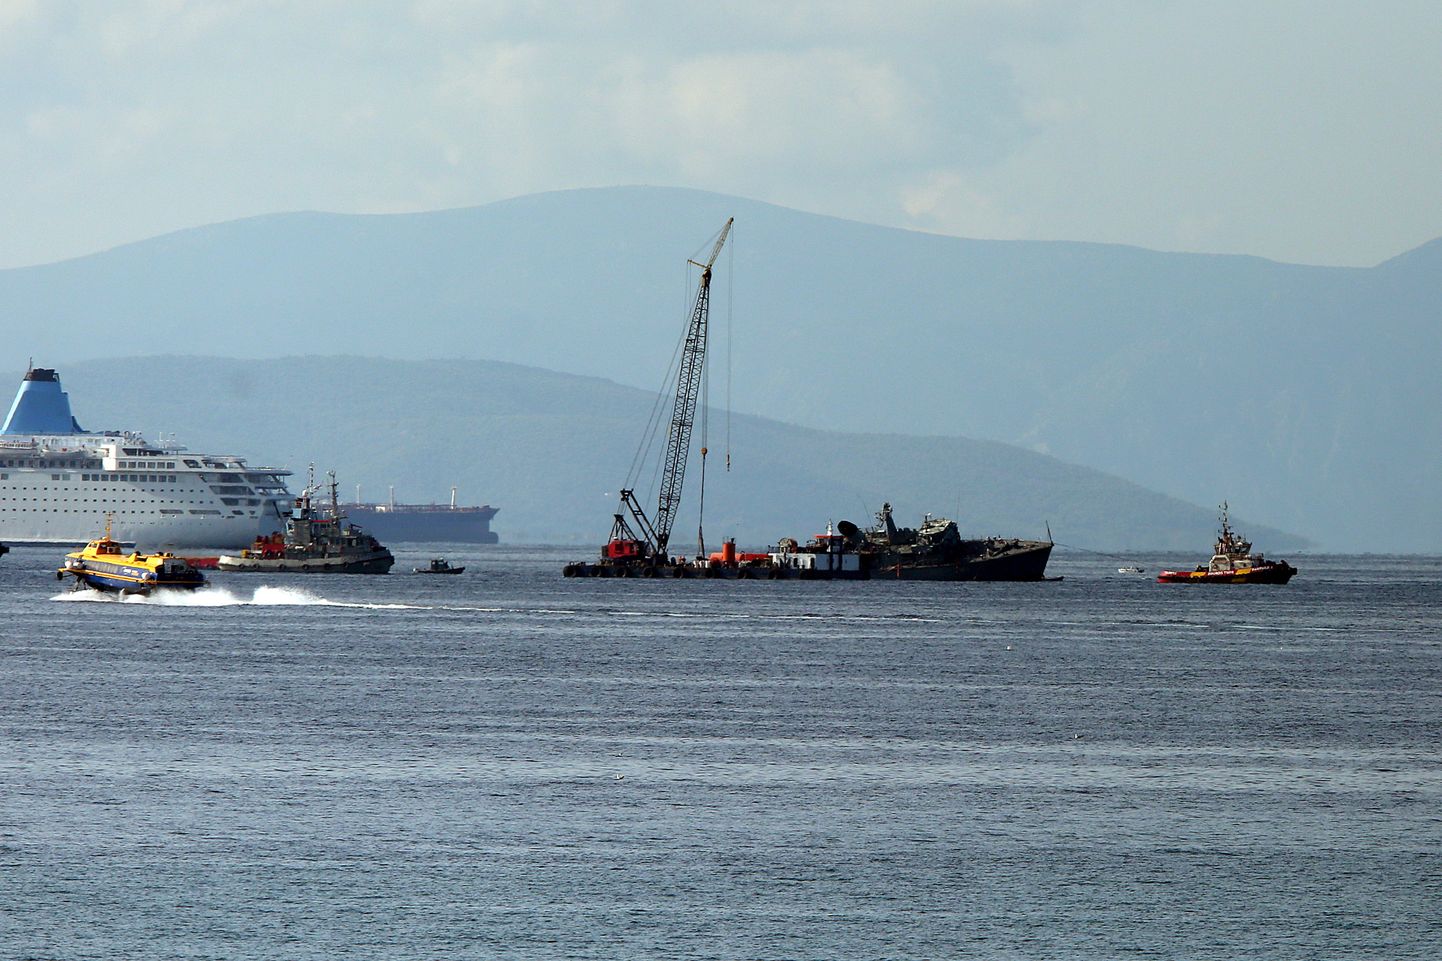 Kokkupõrkes Maerski kaubalaevaga Launceston uppus 27.oktoobril Piraeuse sadama lähistel madalas vees Kreeka mereväe miinitõrjelaev Kallisto. Kaks inimest sai vigastada, 27 päästeti. Õnnetus ei ole seotud Covid-19 viiruse ega majanduskriisiga.